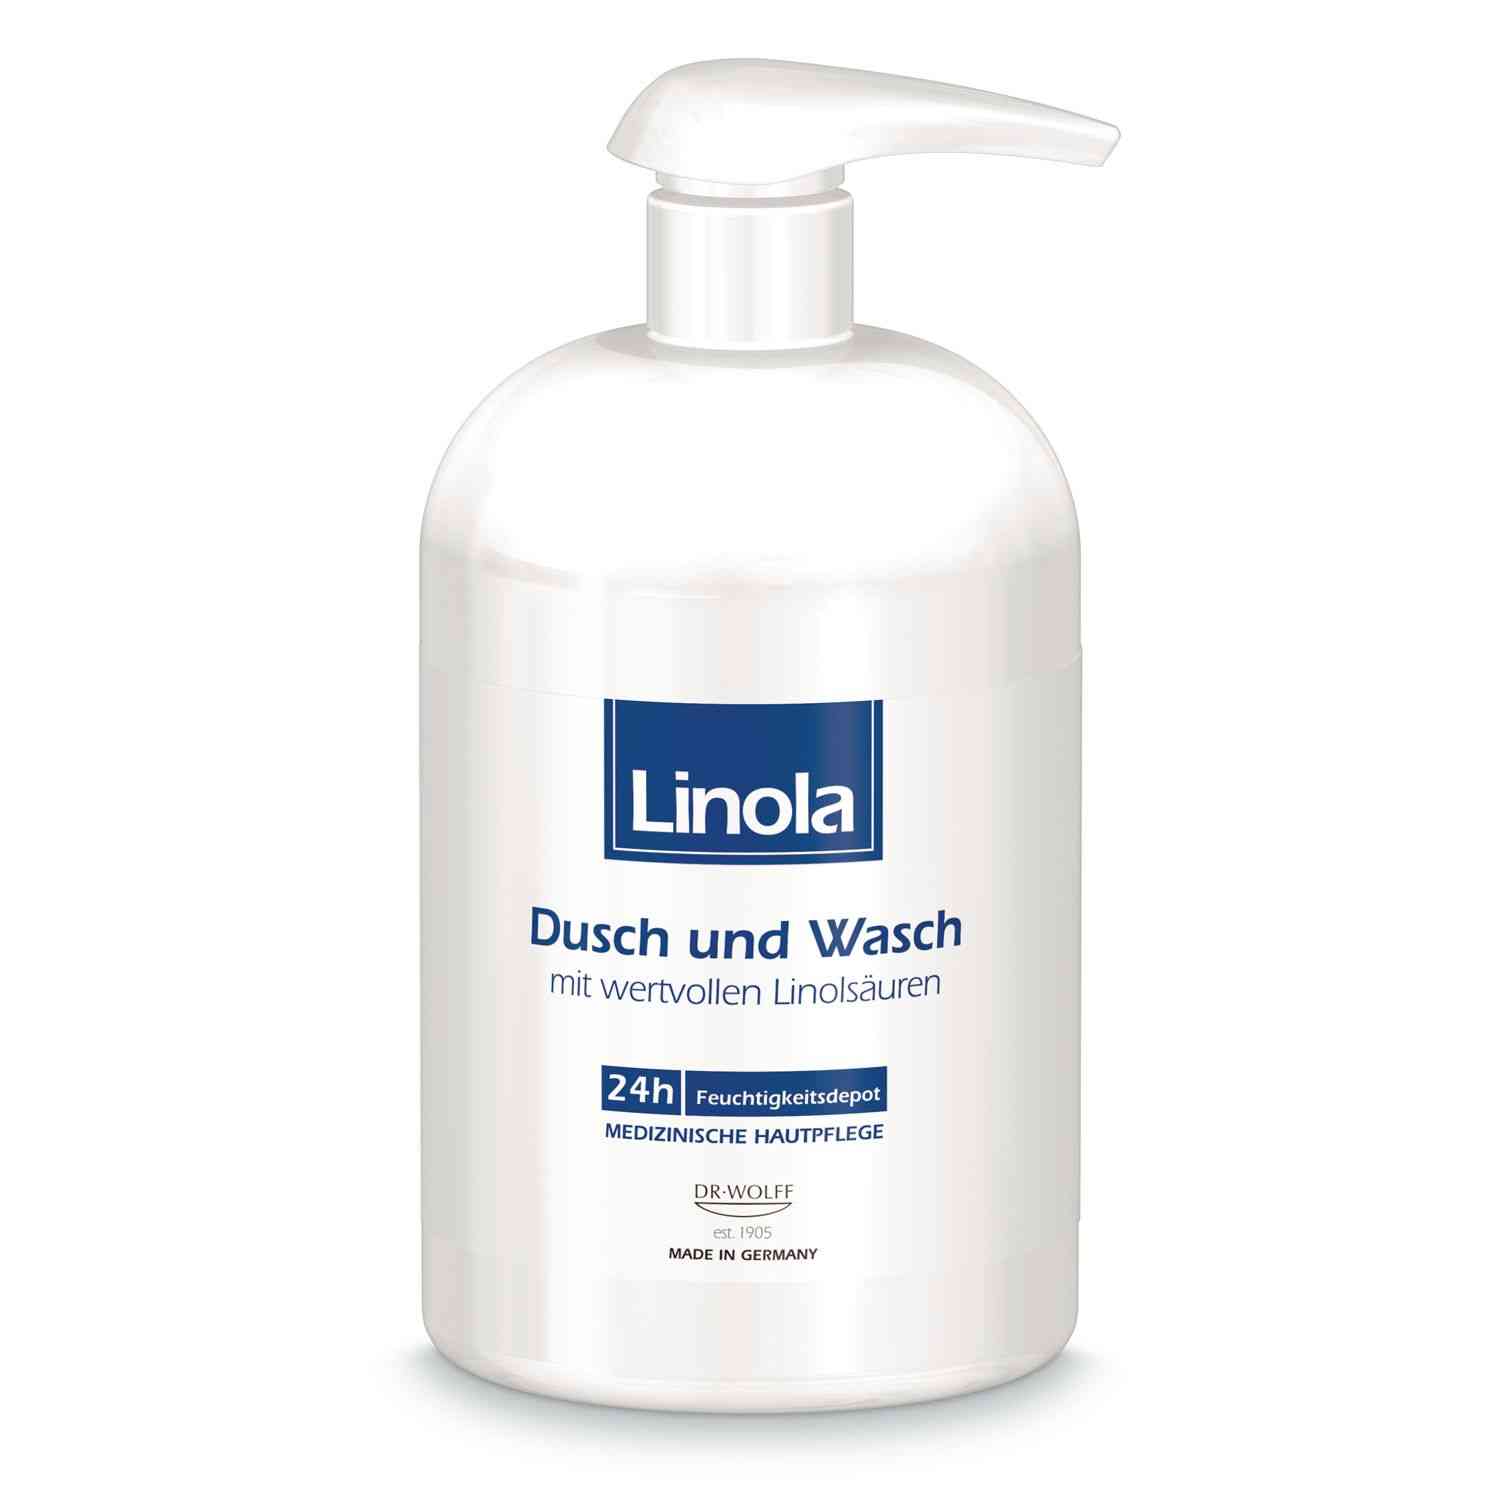 Linola Dusch und Wasch – Duschgel für trockene oder zu Neurodermitis neigende Haut